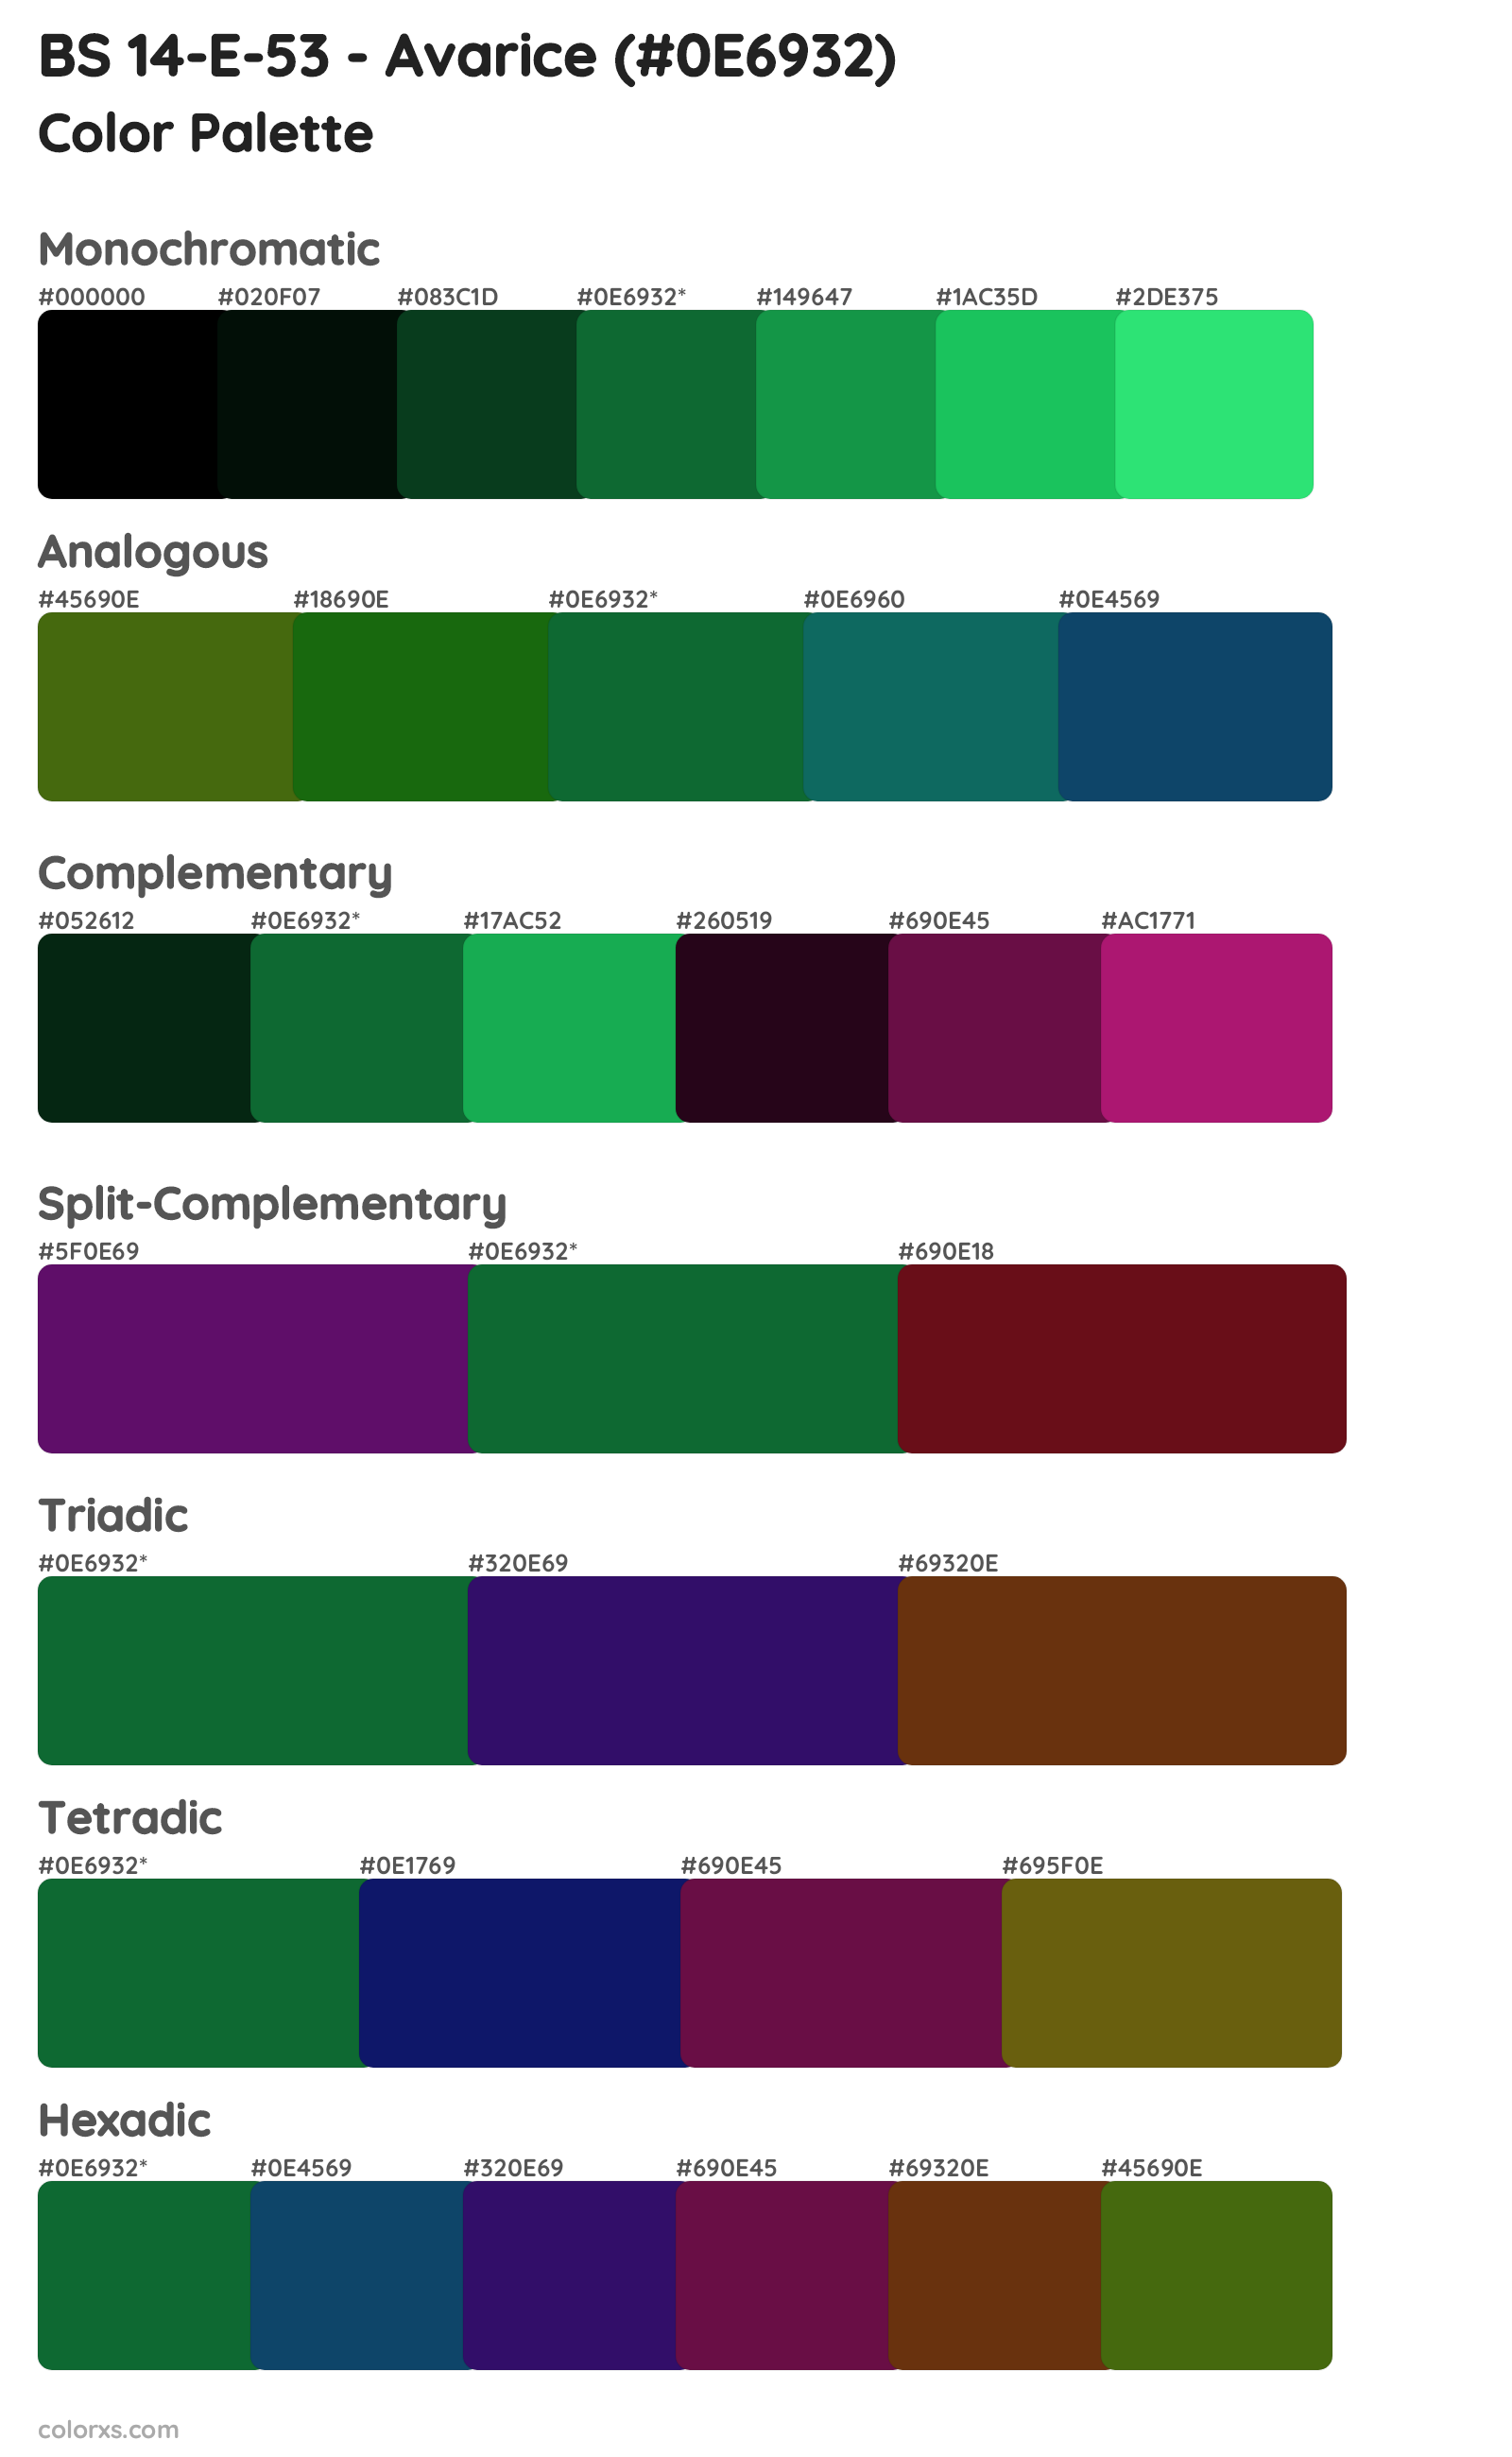 BS 14-E-53 - Avarice Color Scheme Palettes